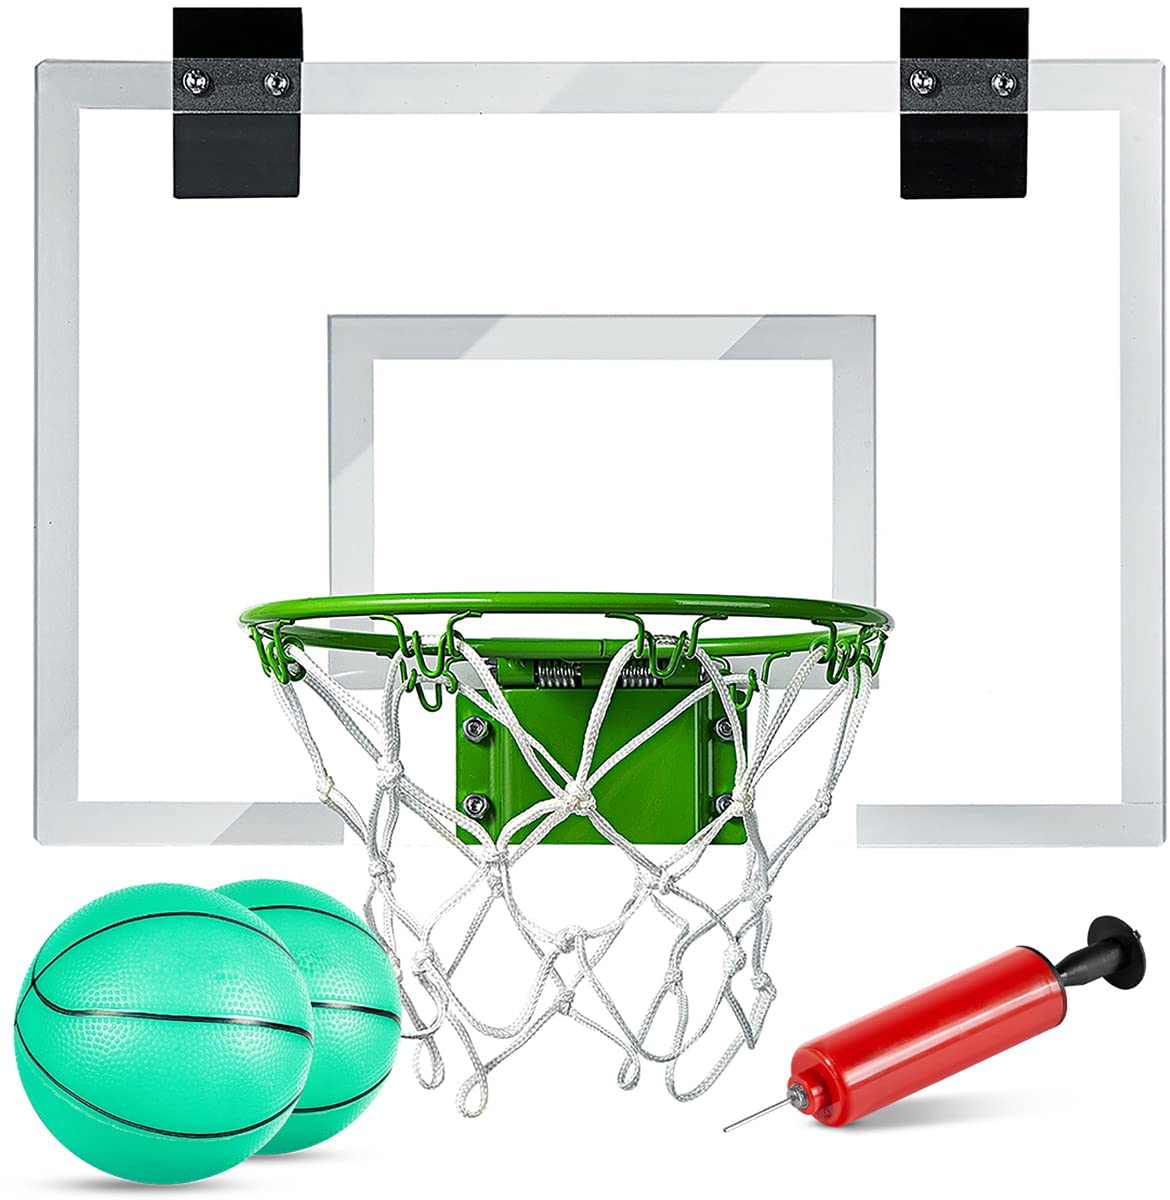 ropoda Glow-In-The-Dark Ball & Indoor Basketball Hoop